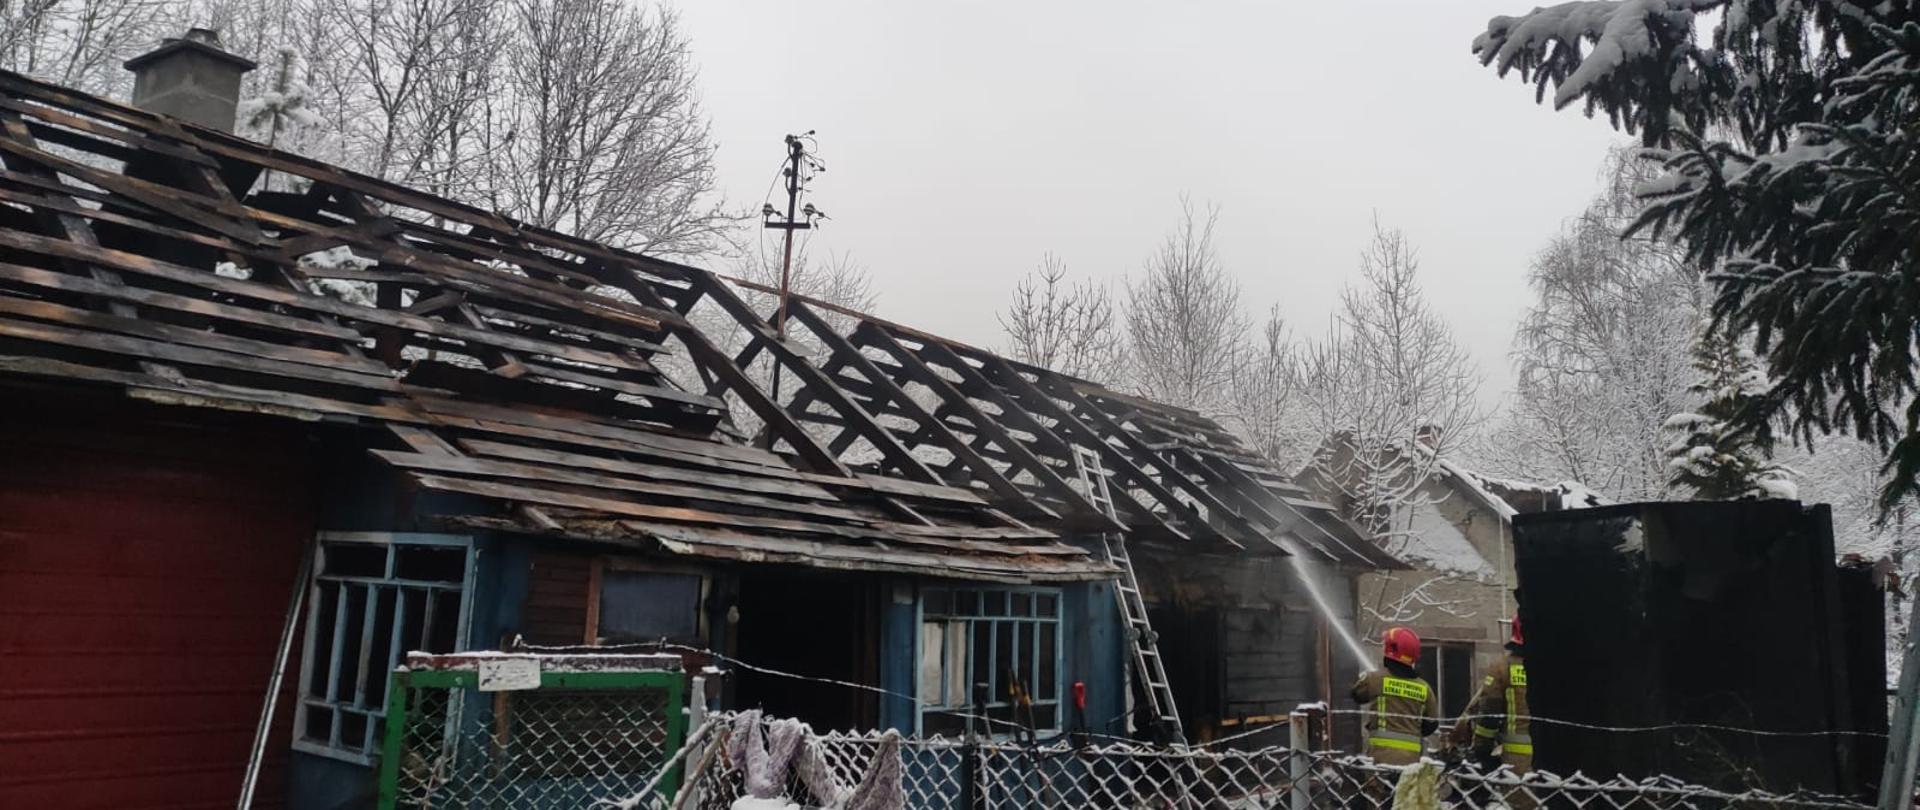 Zdjęcie przedstawia zgliszcza domu drewnianego, dogaszanego przez strażaków. Widoczna zwęglona więźba dachowa. 